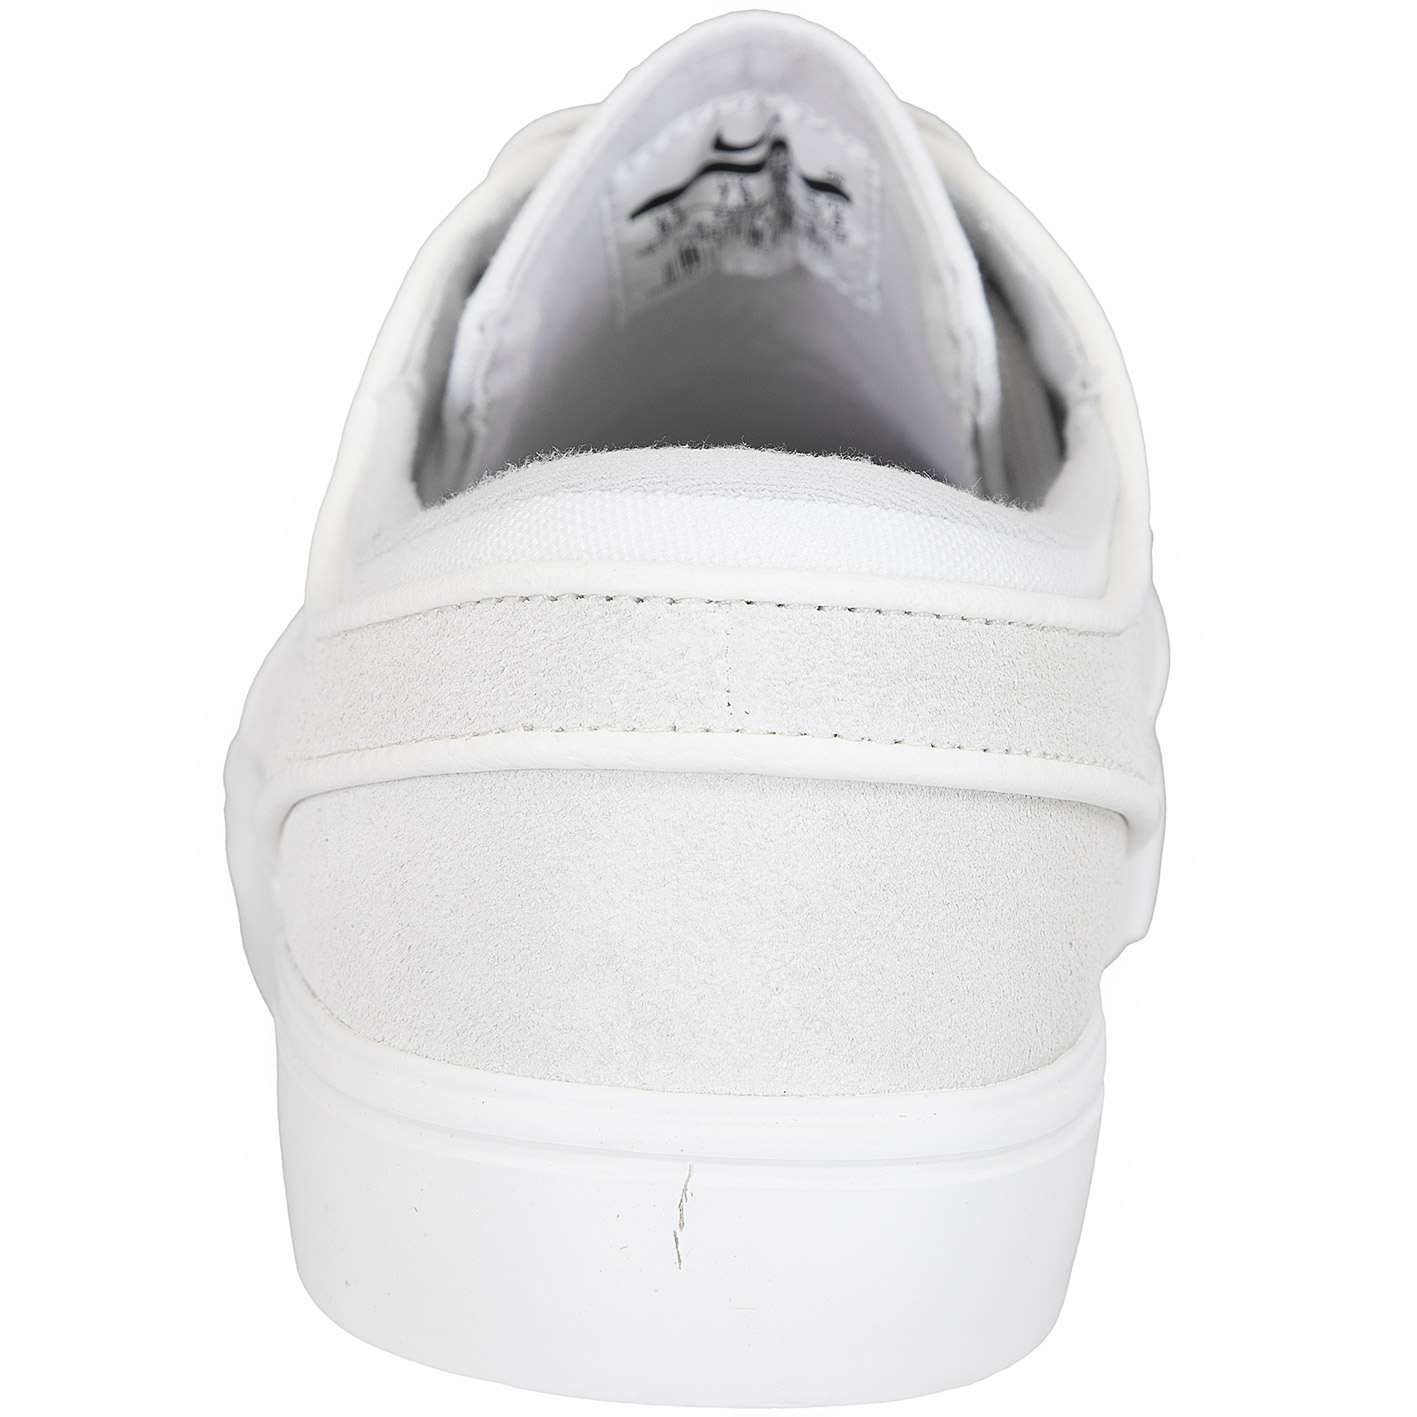 ☆ Nike SB Sneaker Zoom Stefan Janoski weiß/grau - hier bestellen!